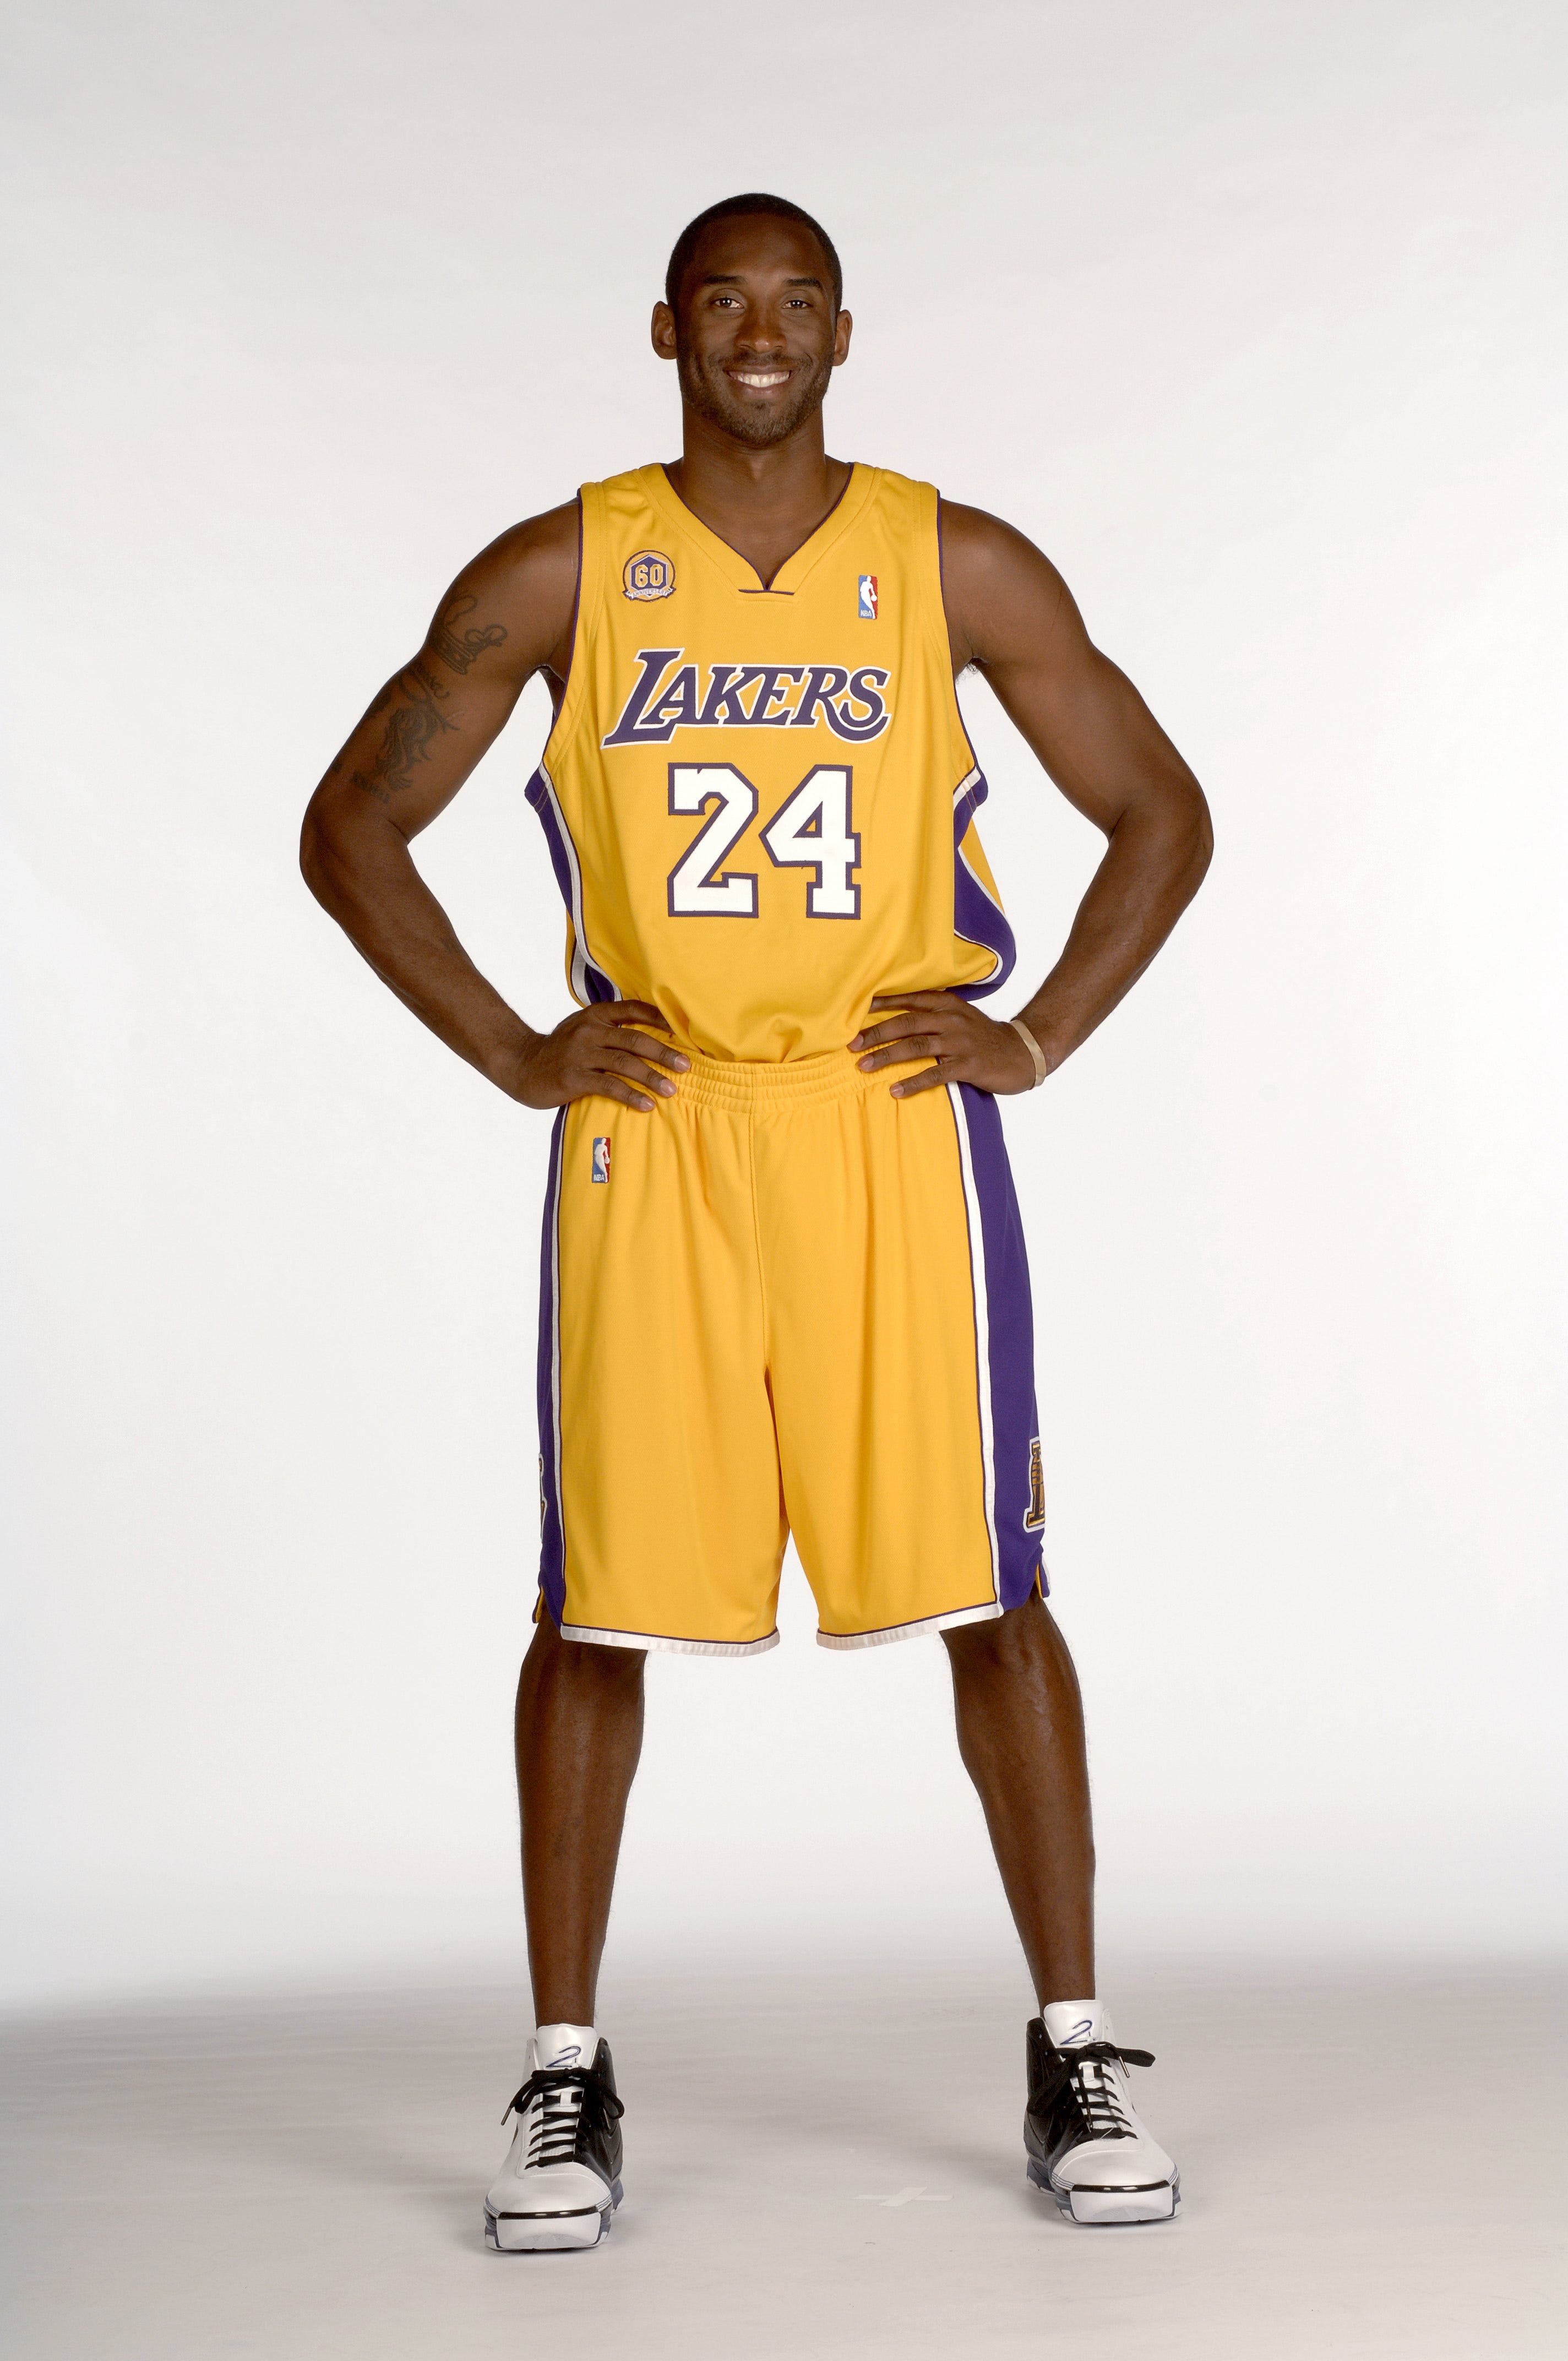 Kobe Bryant during media day in 2007.